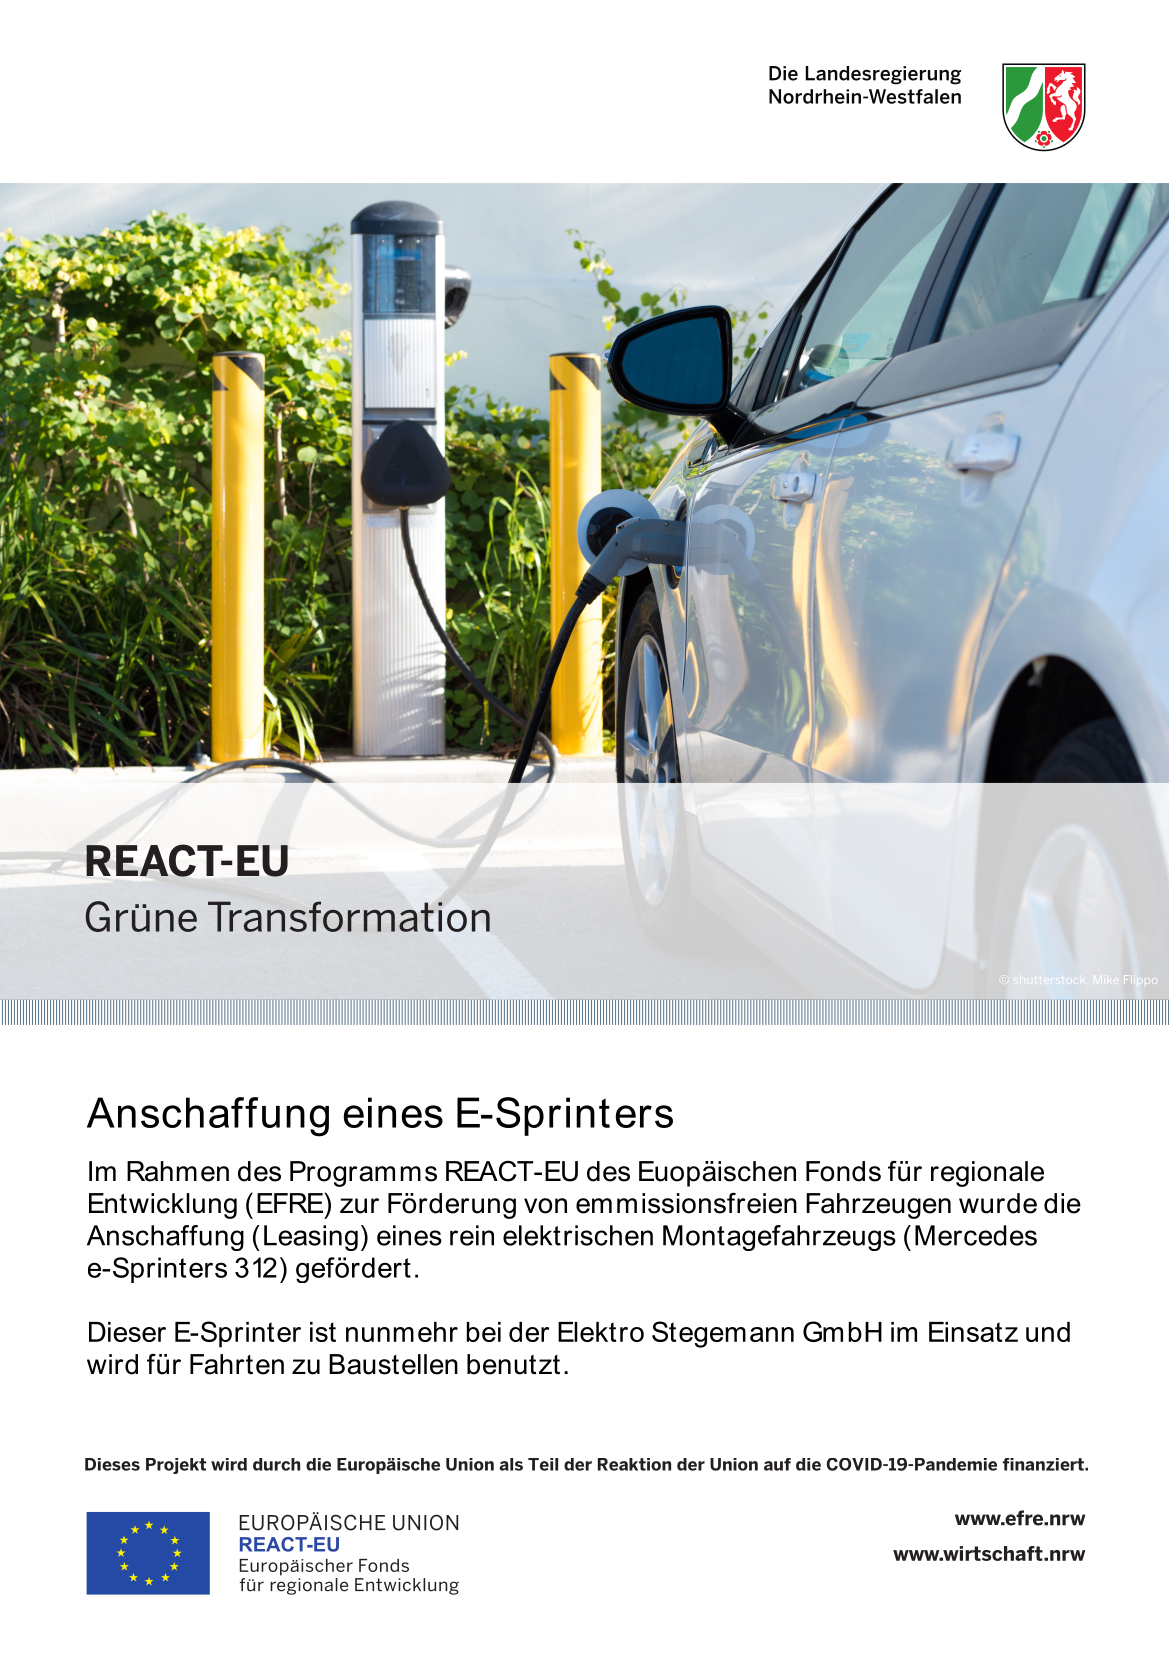 Emissionsfreie Nutzfahrzeuge – Elektro Stegemann ist dabei